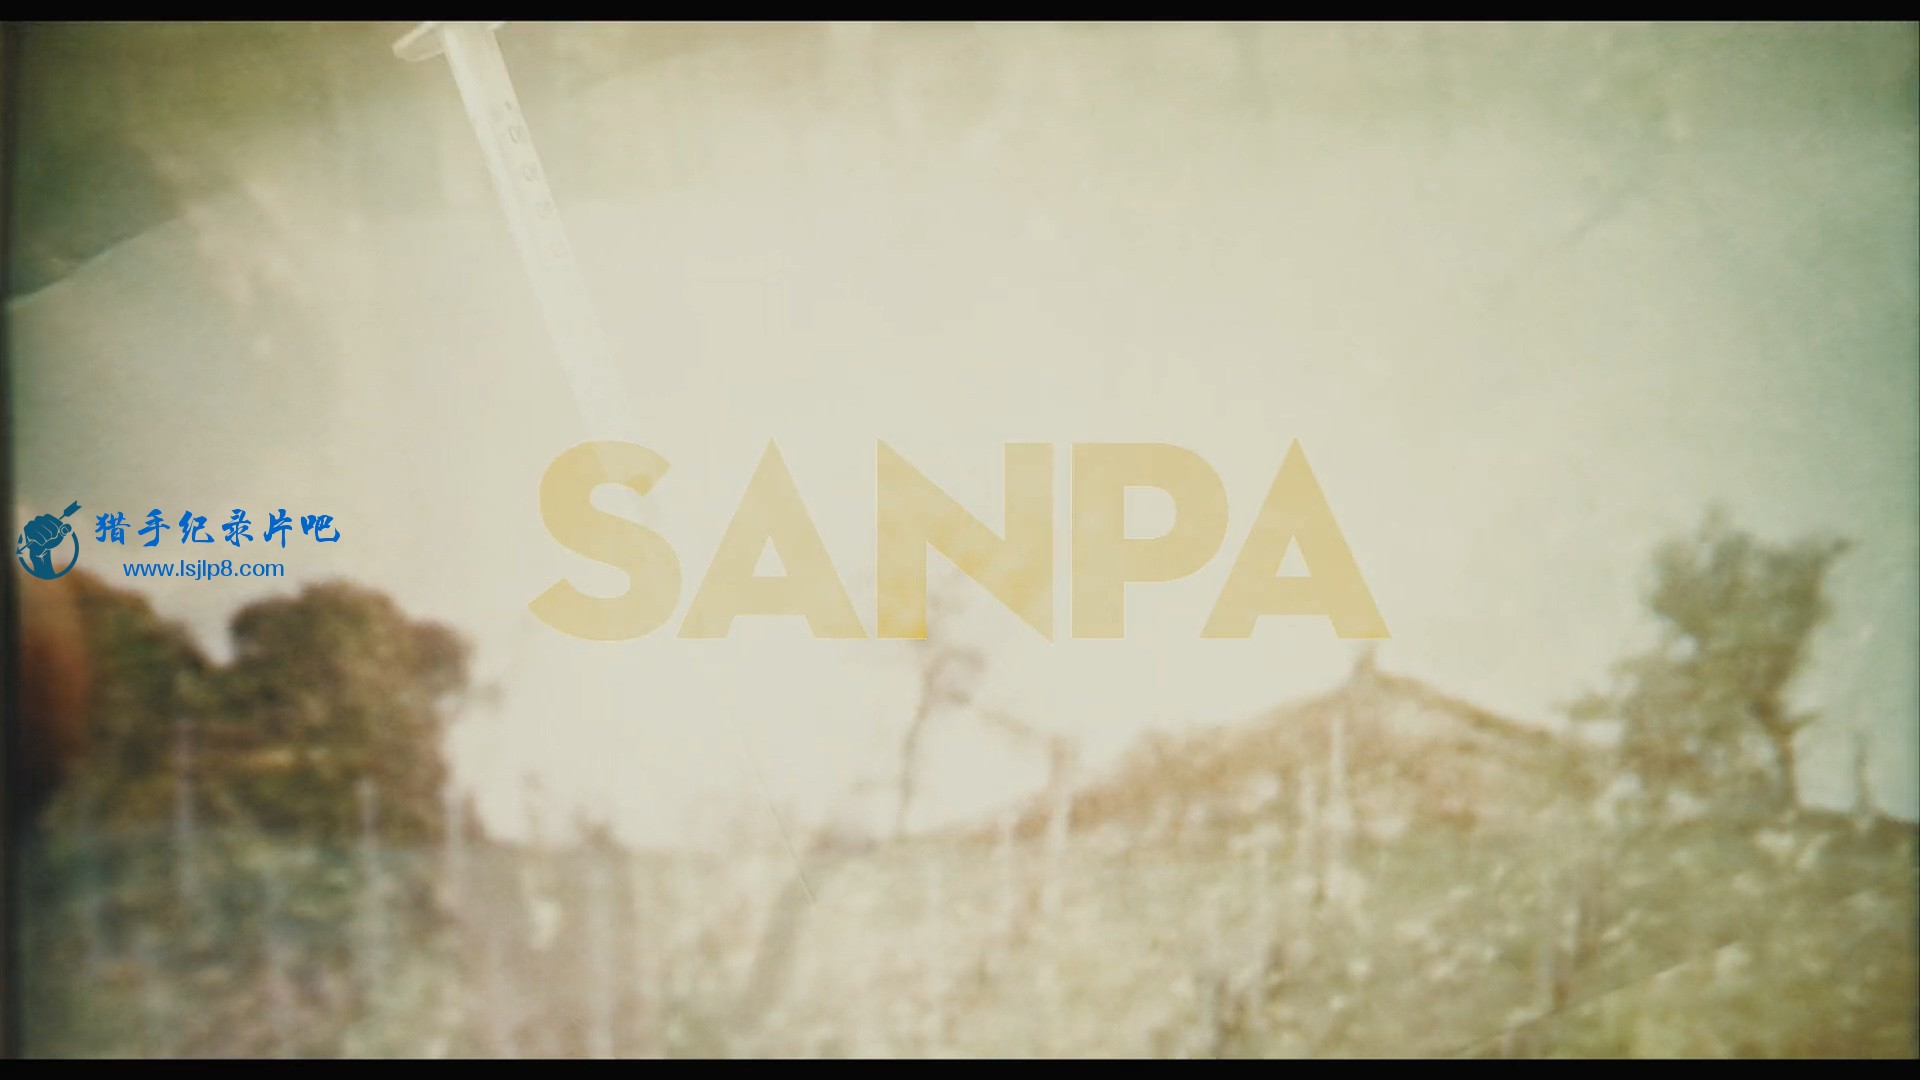 SanPa.Sins.Of.The.Savior.S01E01.1080p.NF.WEB-DL.DDP5.1.H.264-NTb.mkv_20210105_10.jpg